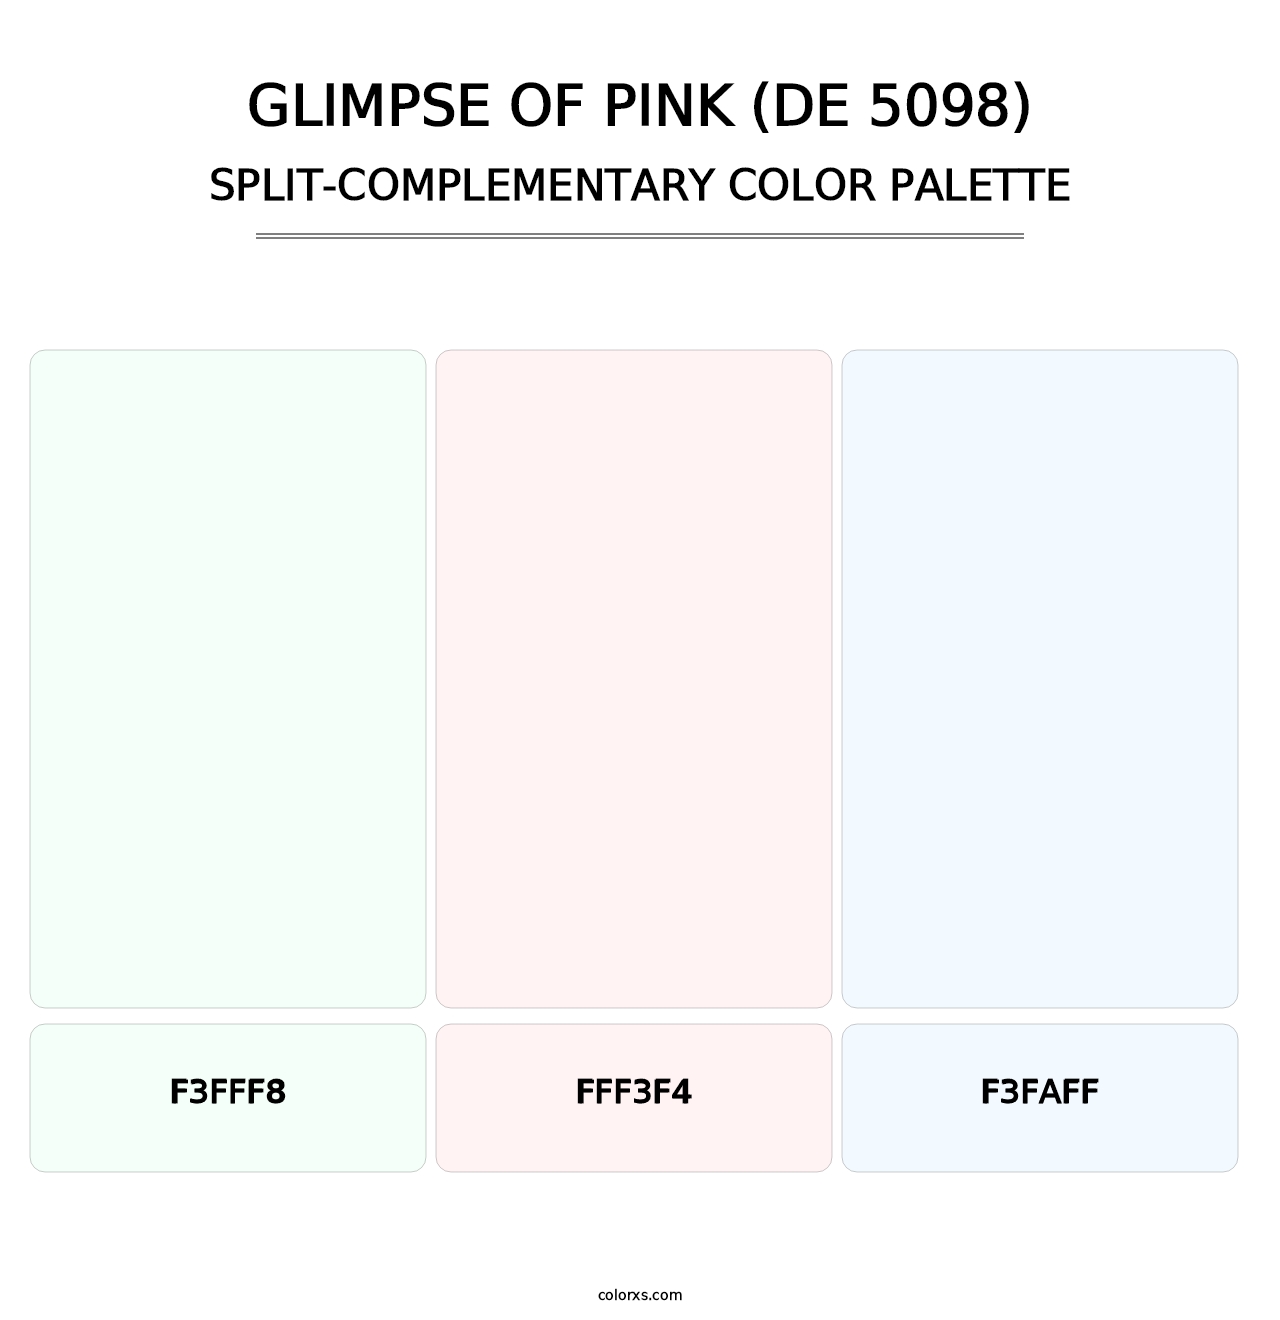 Glimpse of Pink (DE 5098) - Split-Complementary Color Palette